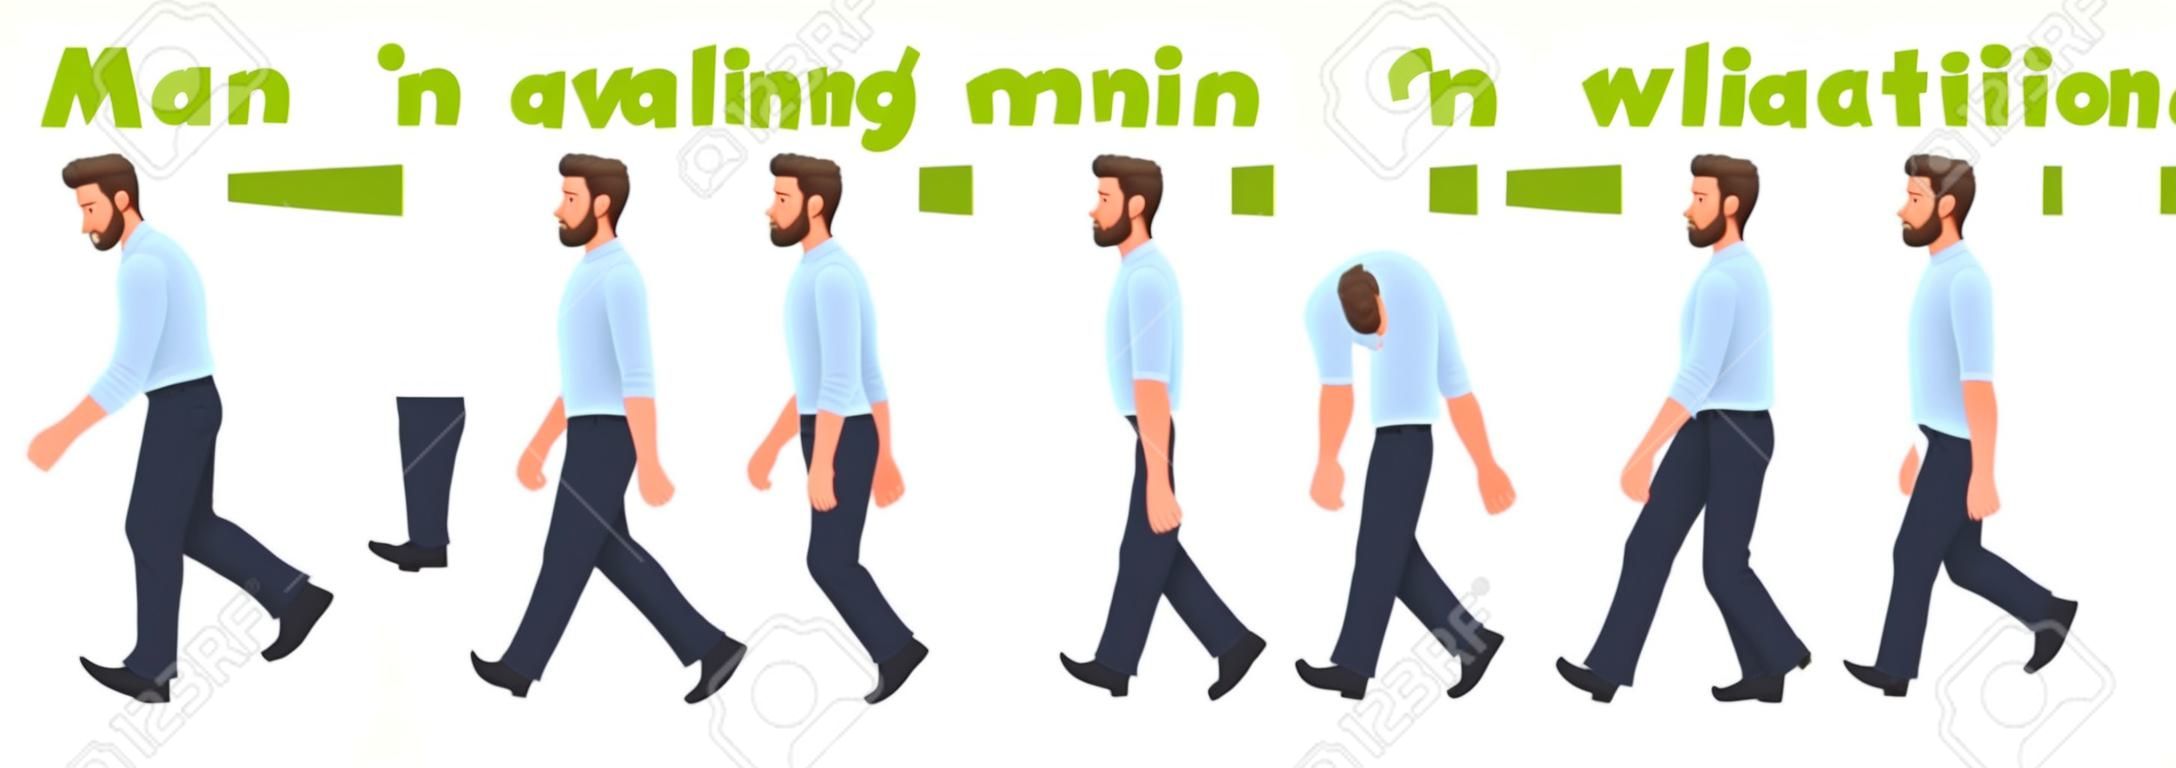 Animacja chodzenia postaci człowieka. spacery biznesmena, cykl zdjęć krok po kroku. ilustracja wektorowa w stylu kreskówki